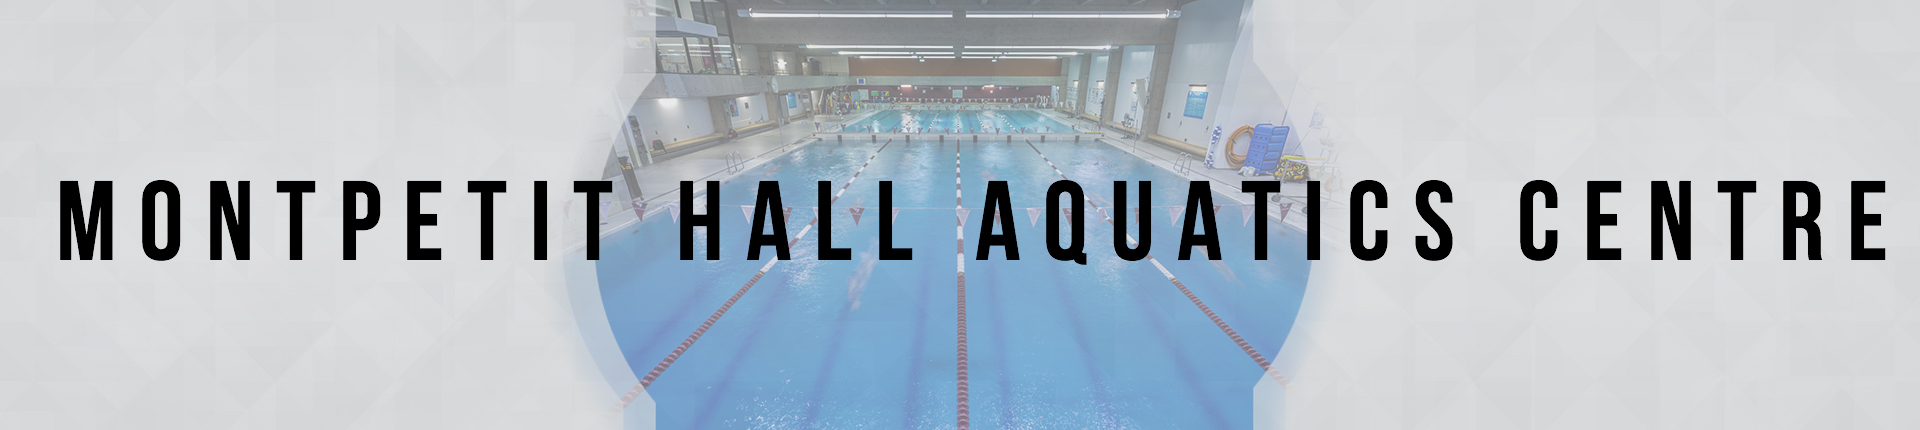 Montpetit Hall Aquatics Centre